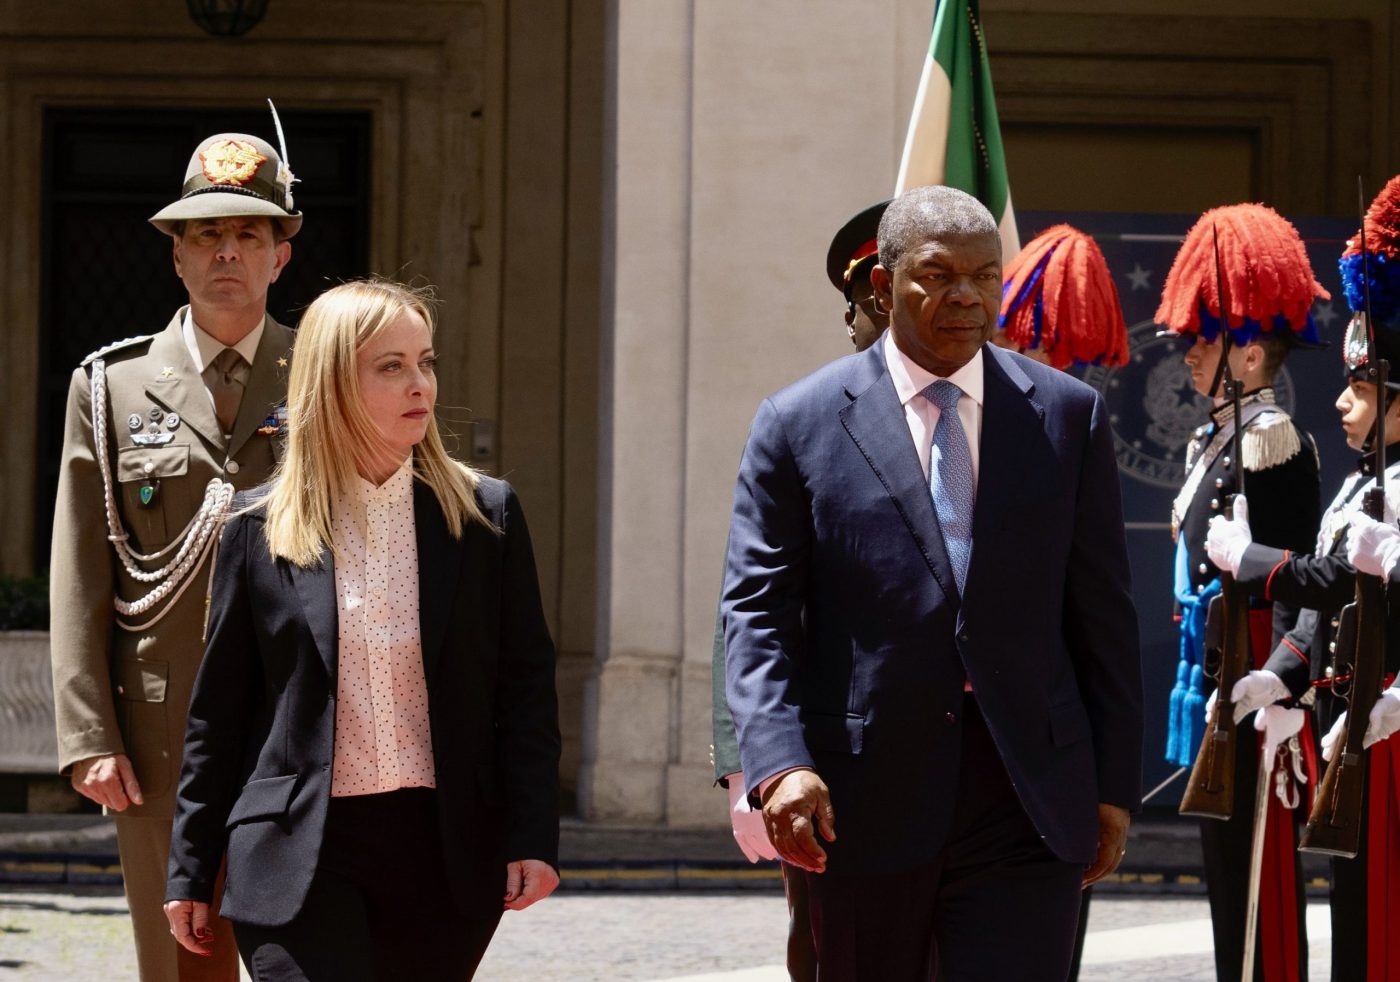 L’Italia rafforza i rapporti energetici con l’Angola e guarda al piano di sviluppo africano